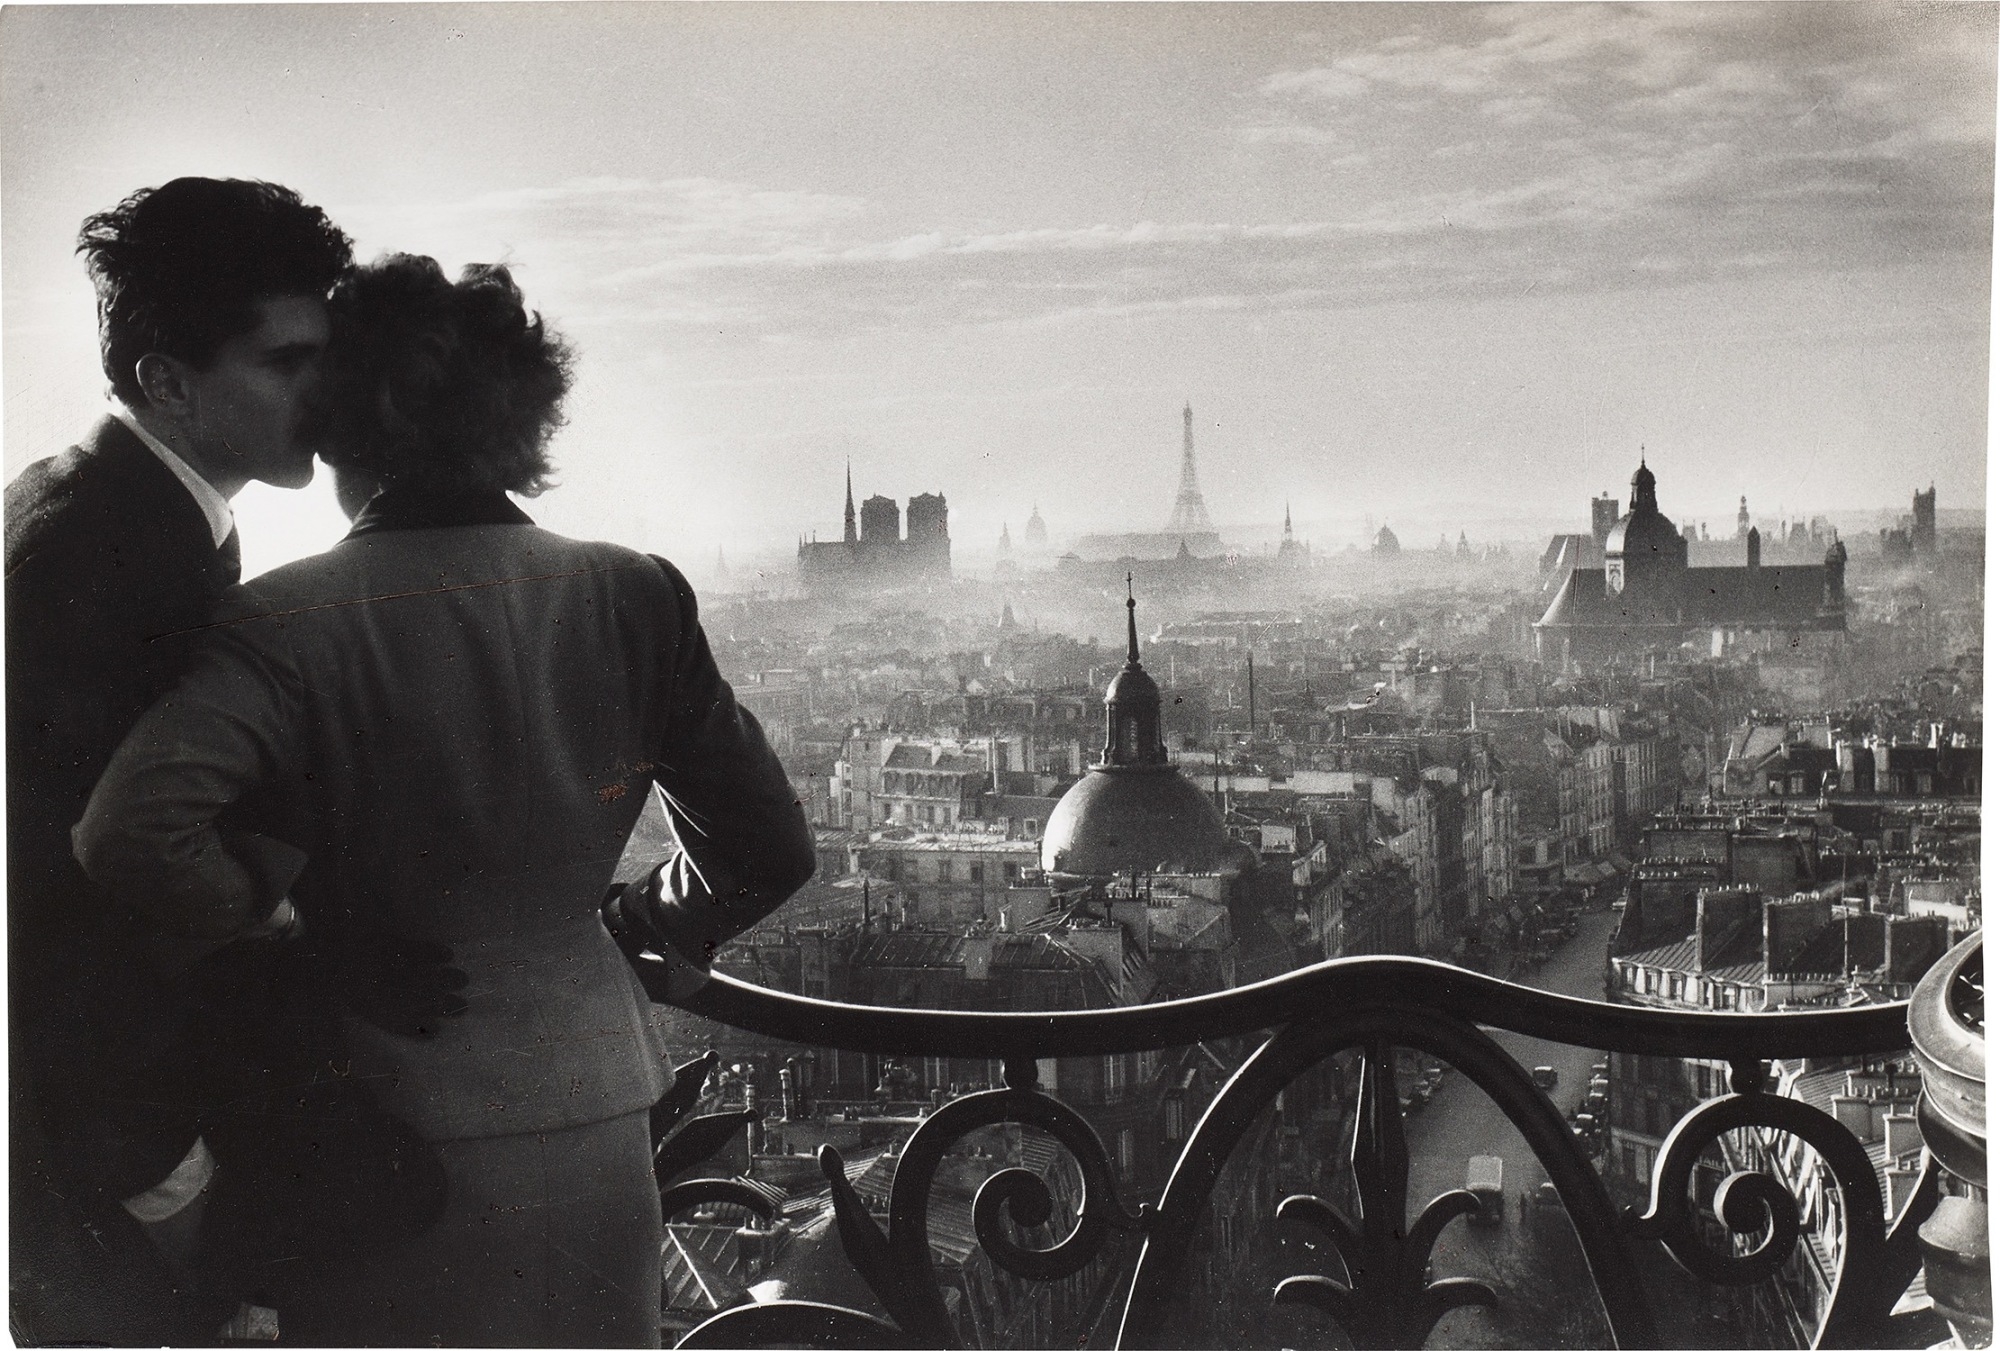 Les amoureux de la Bastille, Paris by Willy Ronis, 1957